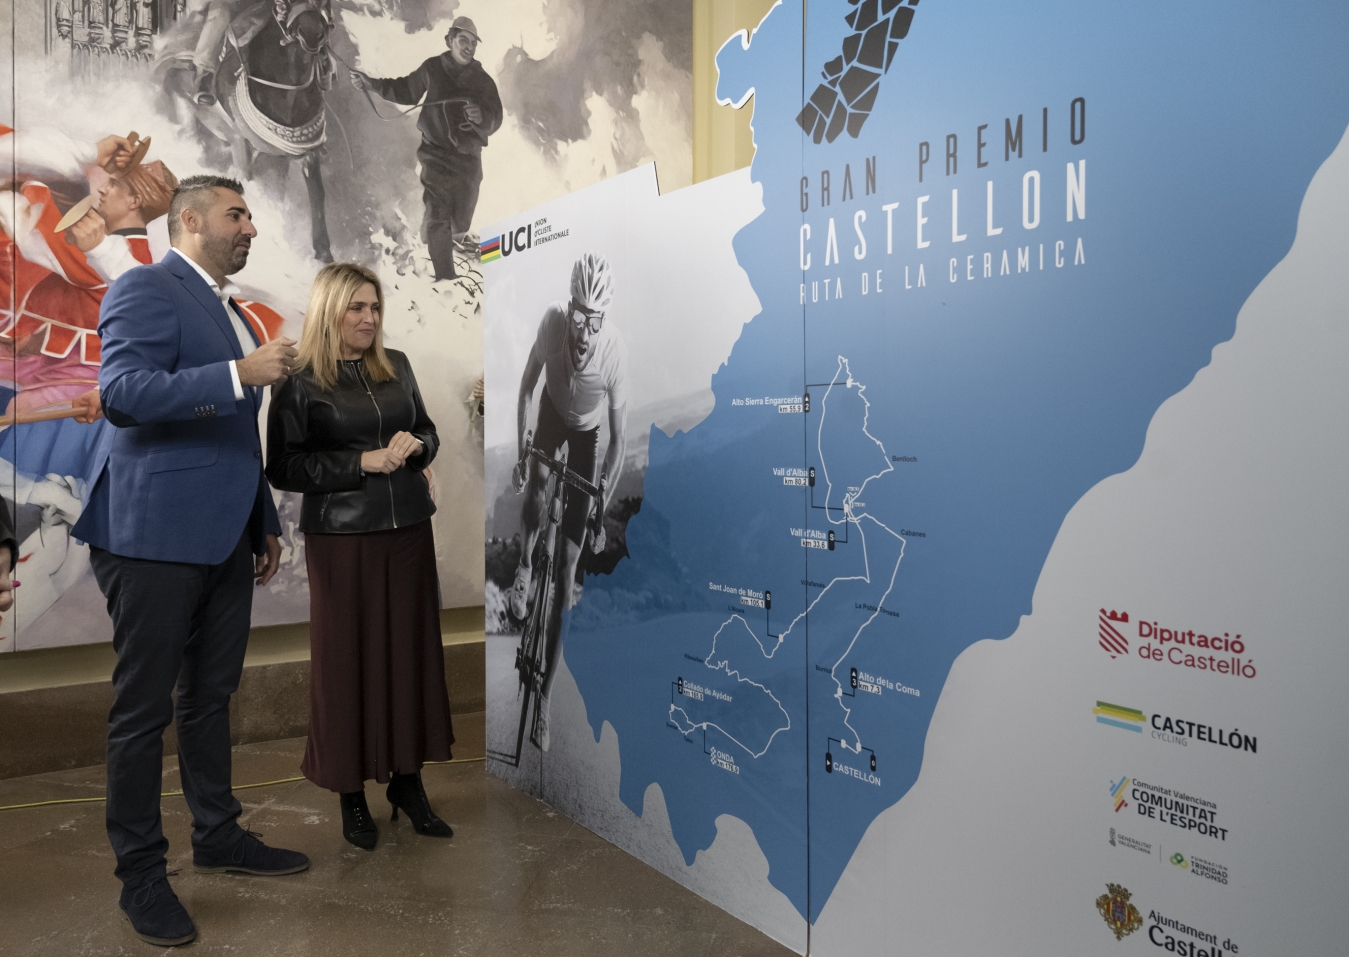 La Diputación de Castellón refuerza su apoyo al ciclismo con el Gran Premio Castellón – Ruta de la Cerámica e impulsa la provincia como escenario deportivo